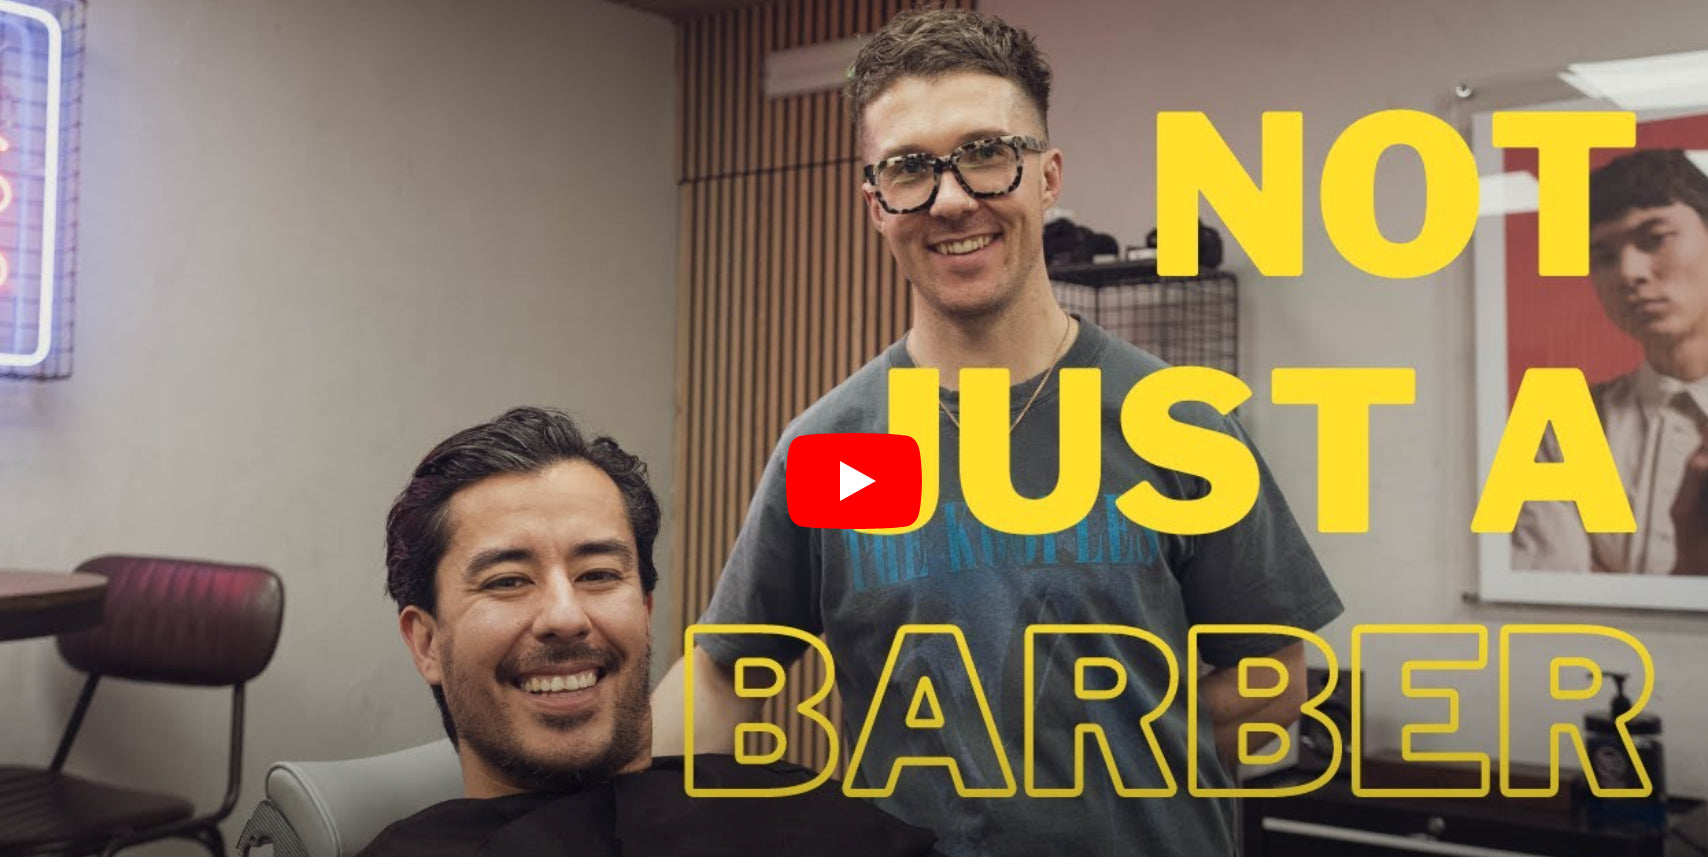 Vídeo: No es sólo un barbero Episodio 3 - Elliot Forbes